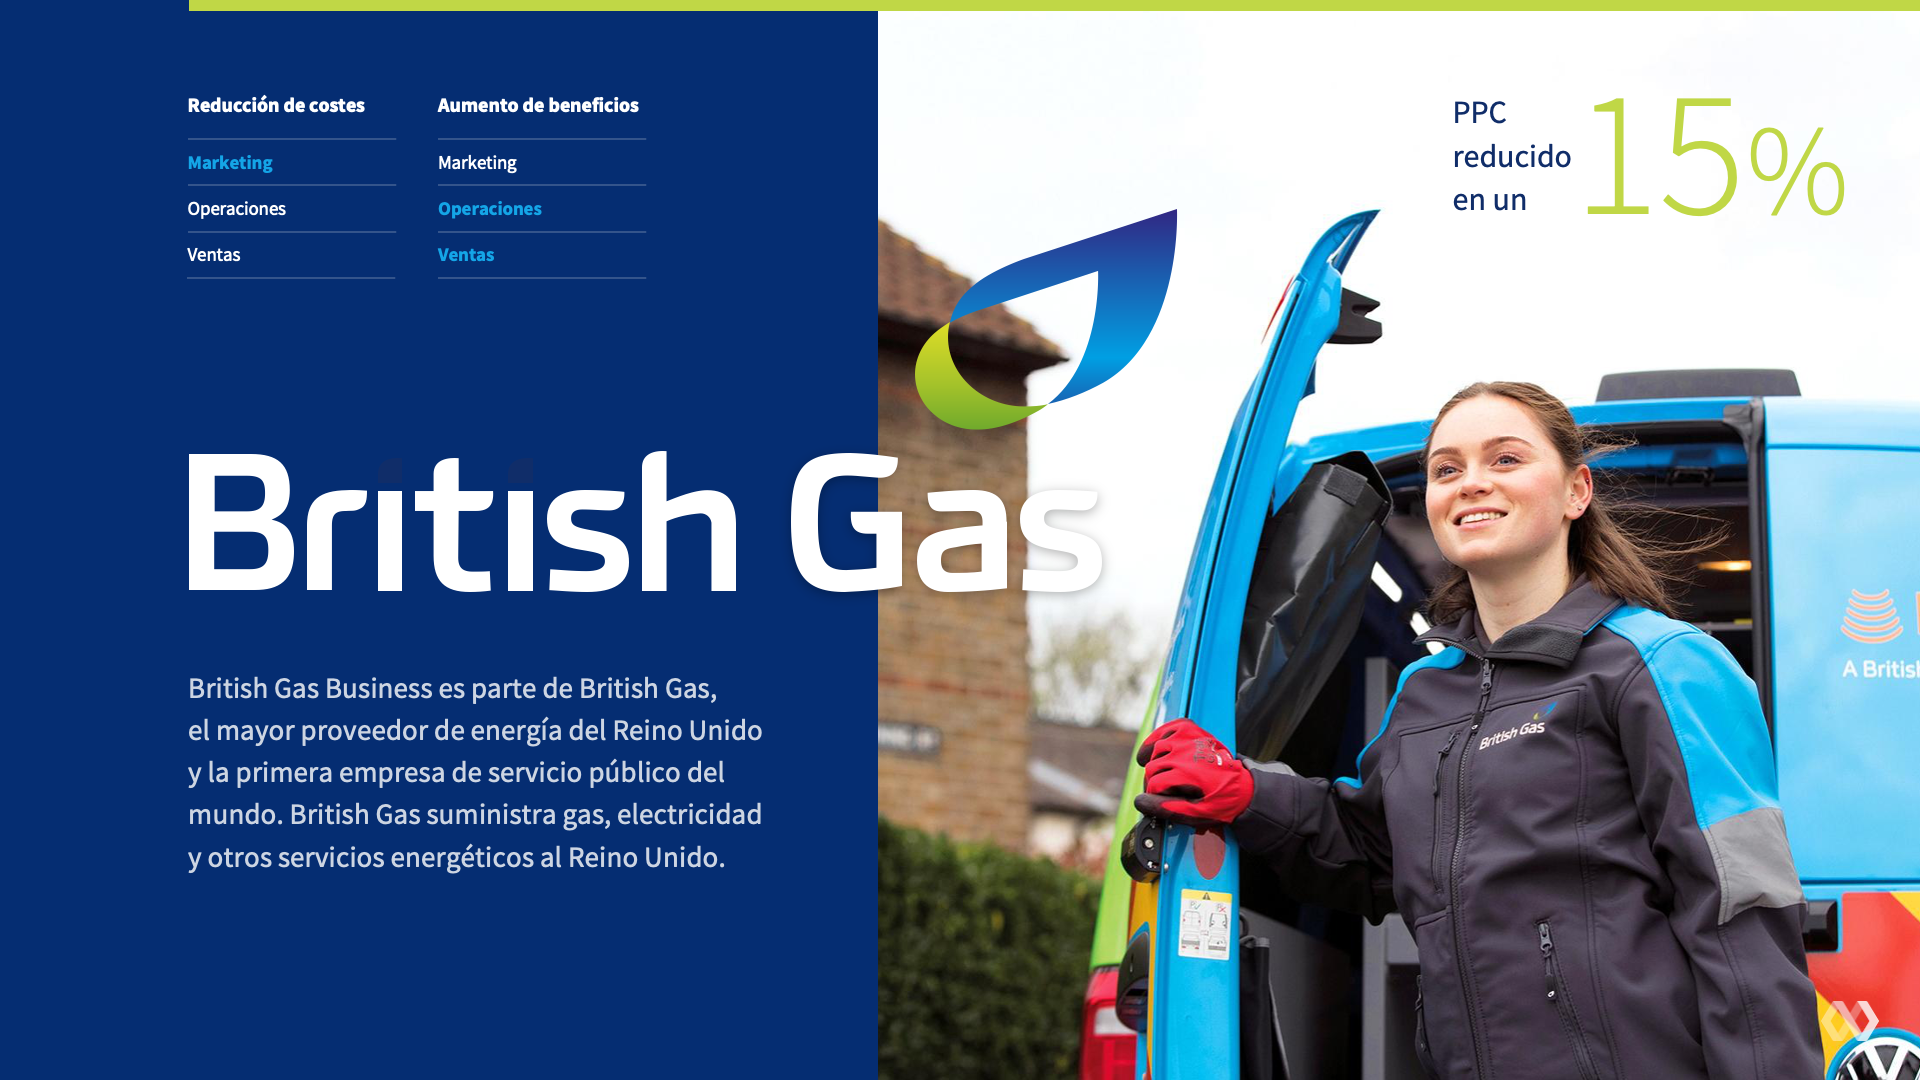 British Gas case study